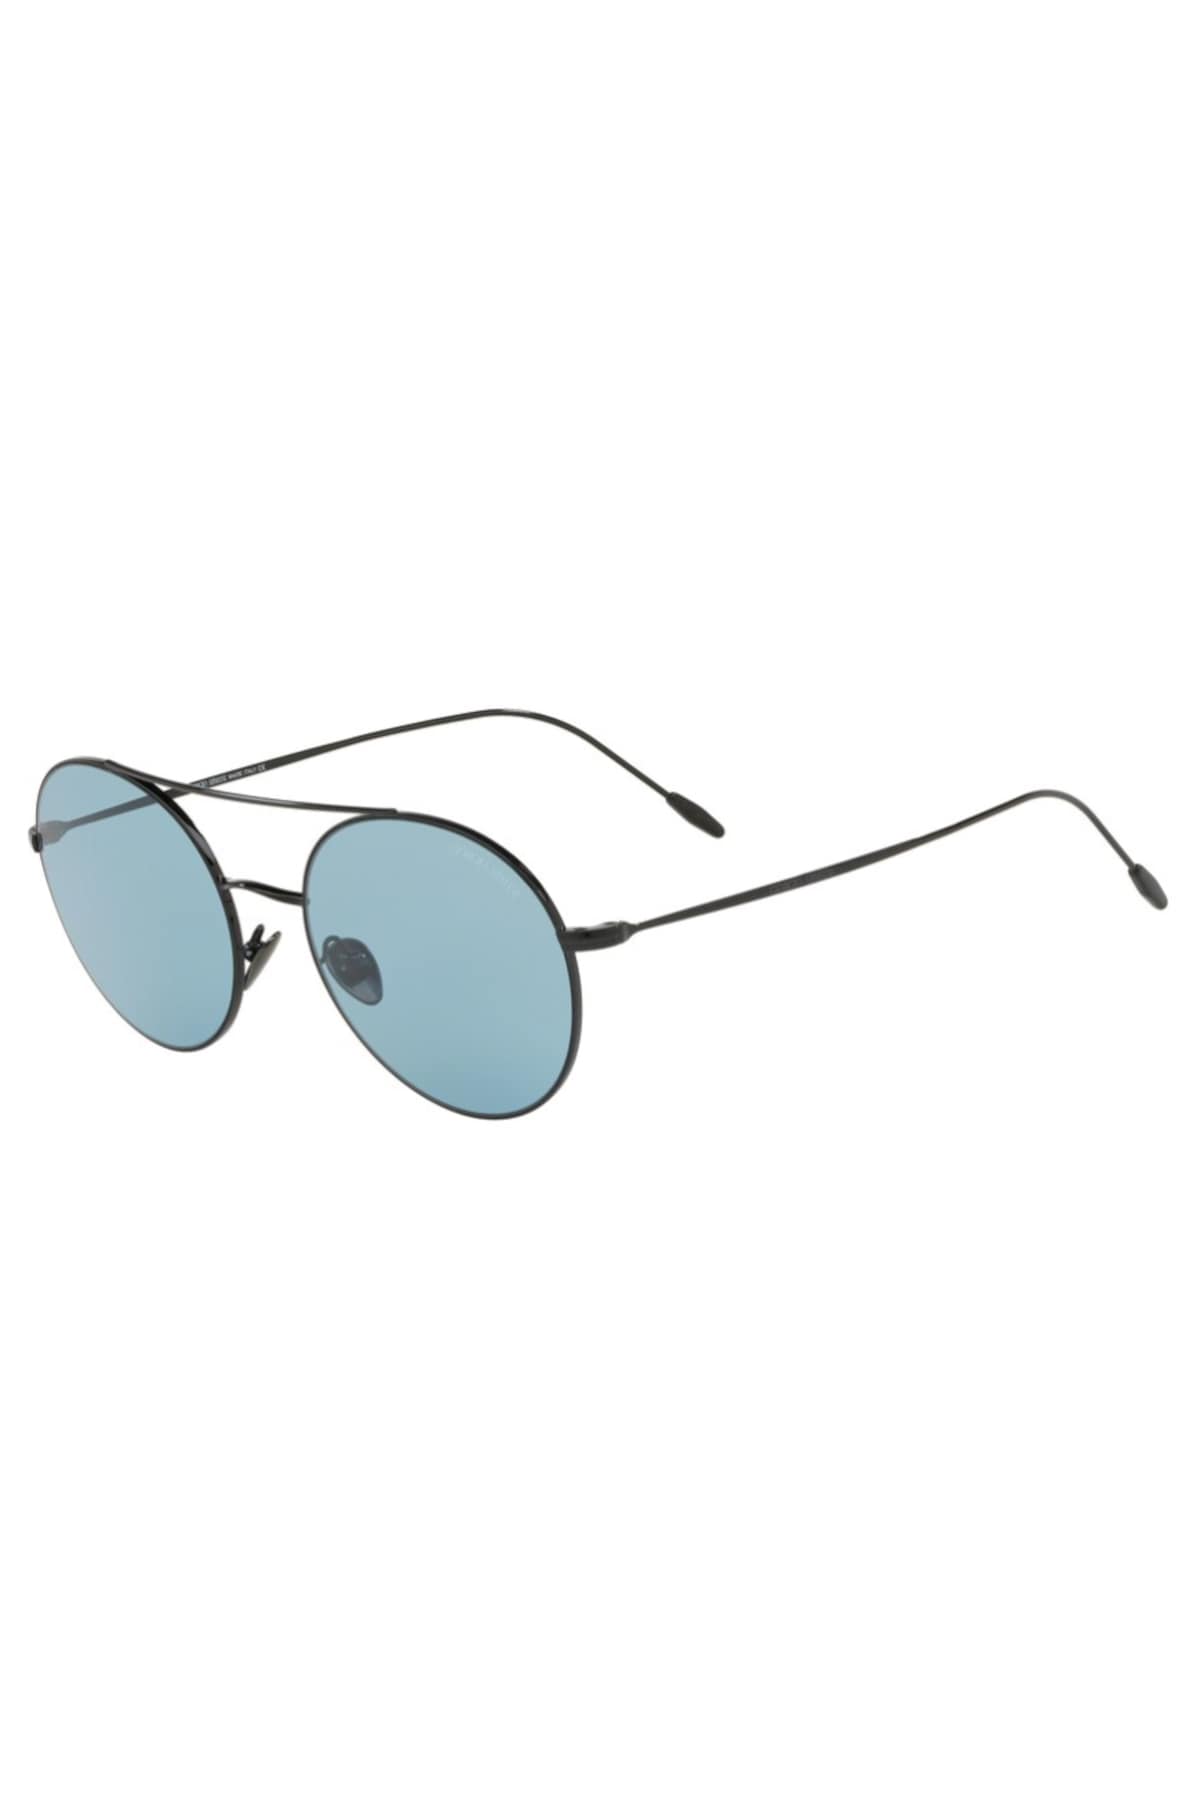  Giorgio Armani Güneş Gözlüğü Fiyatları